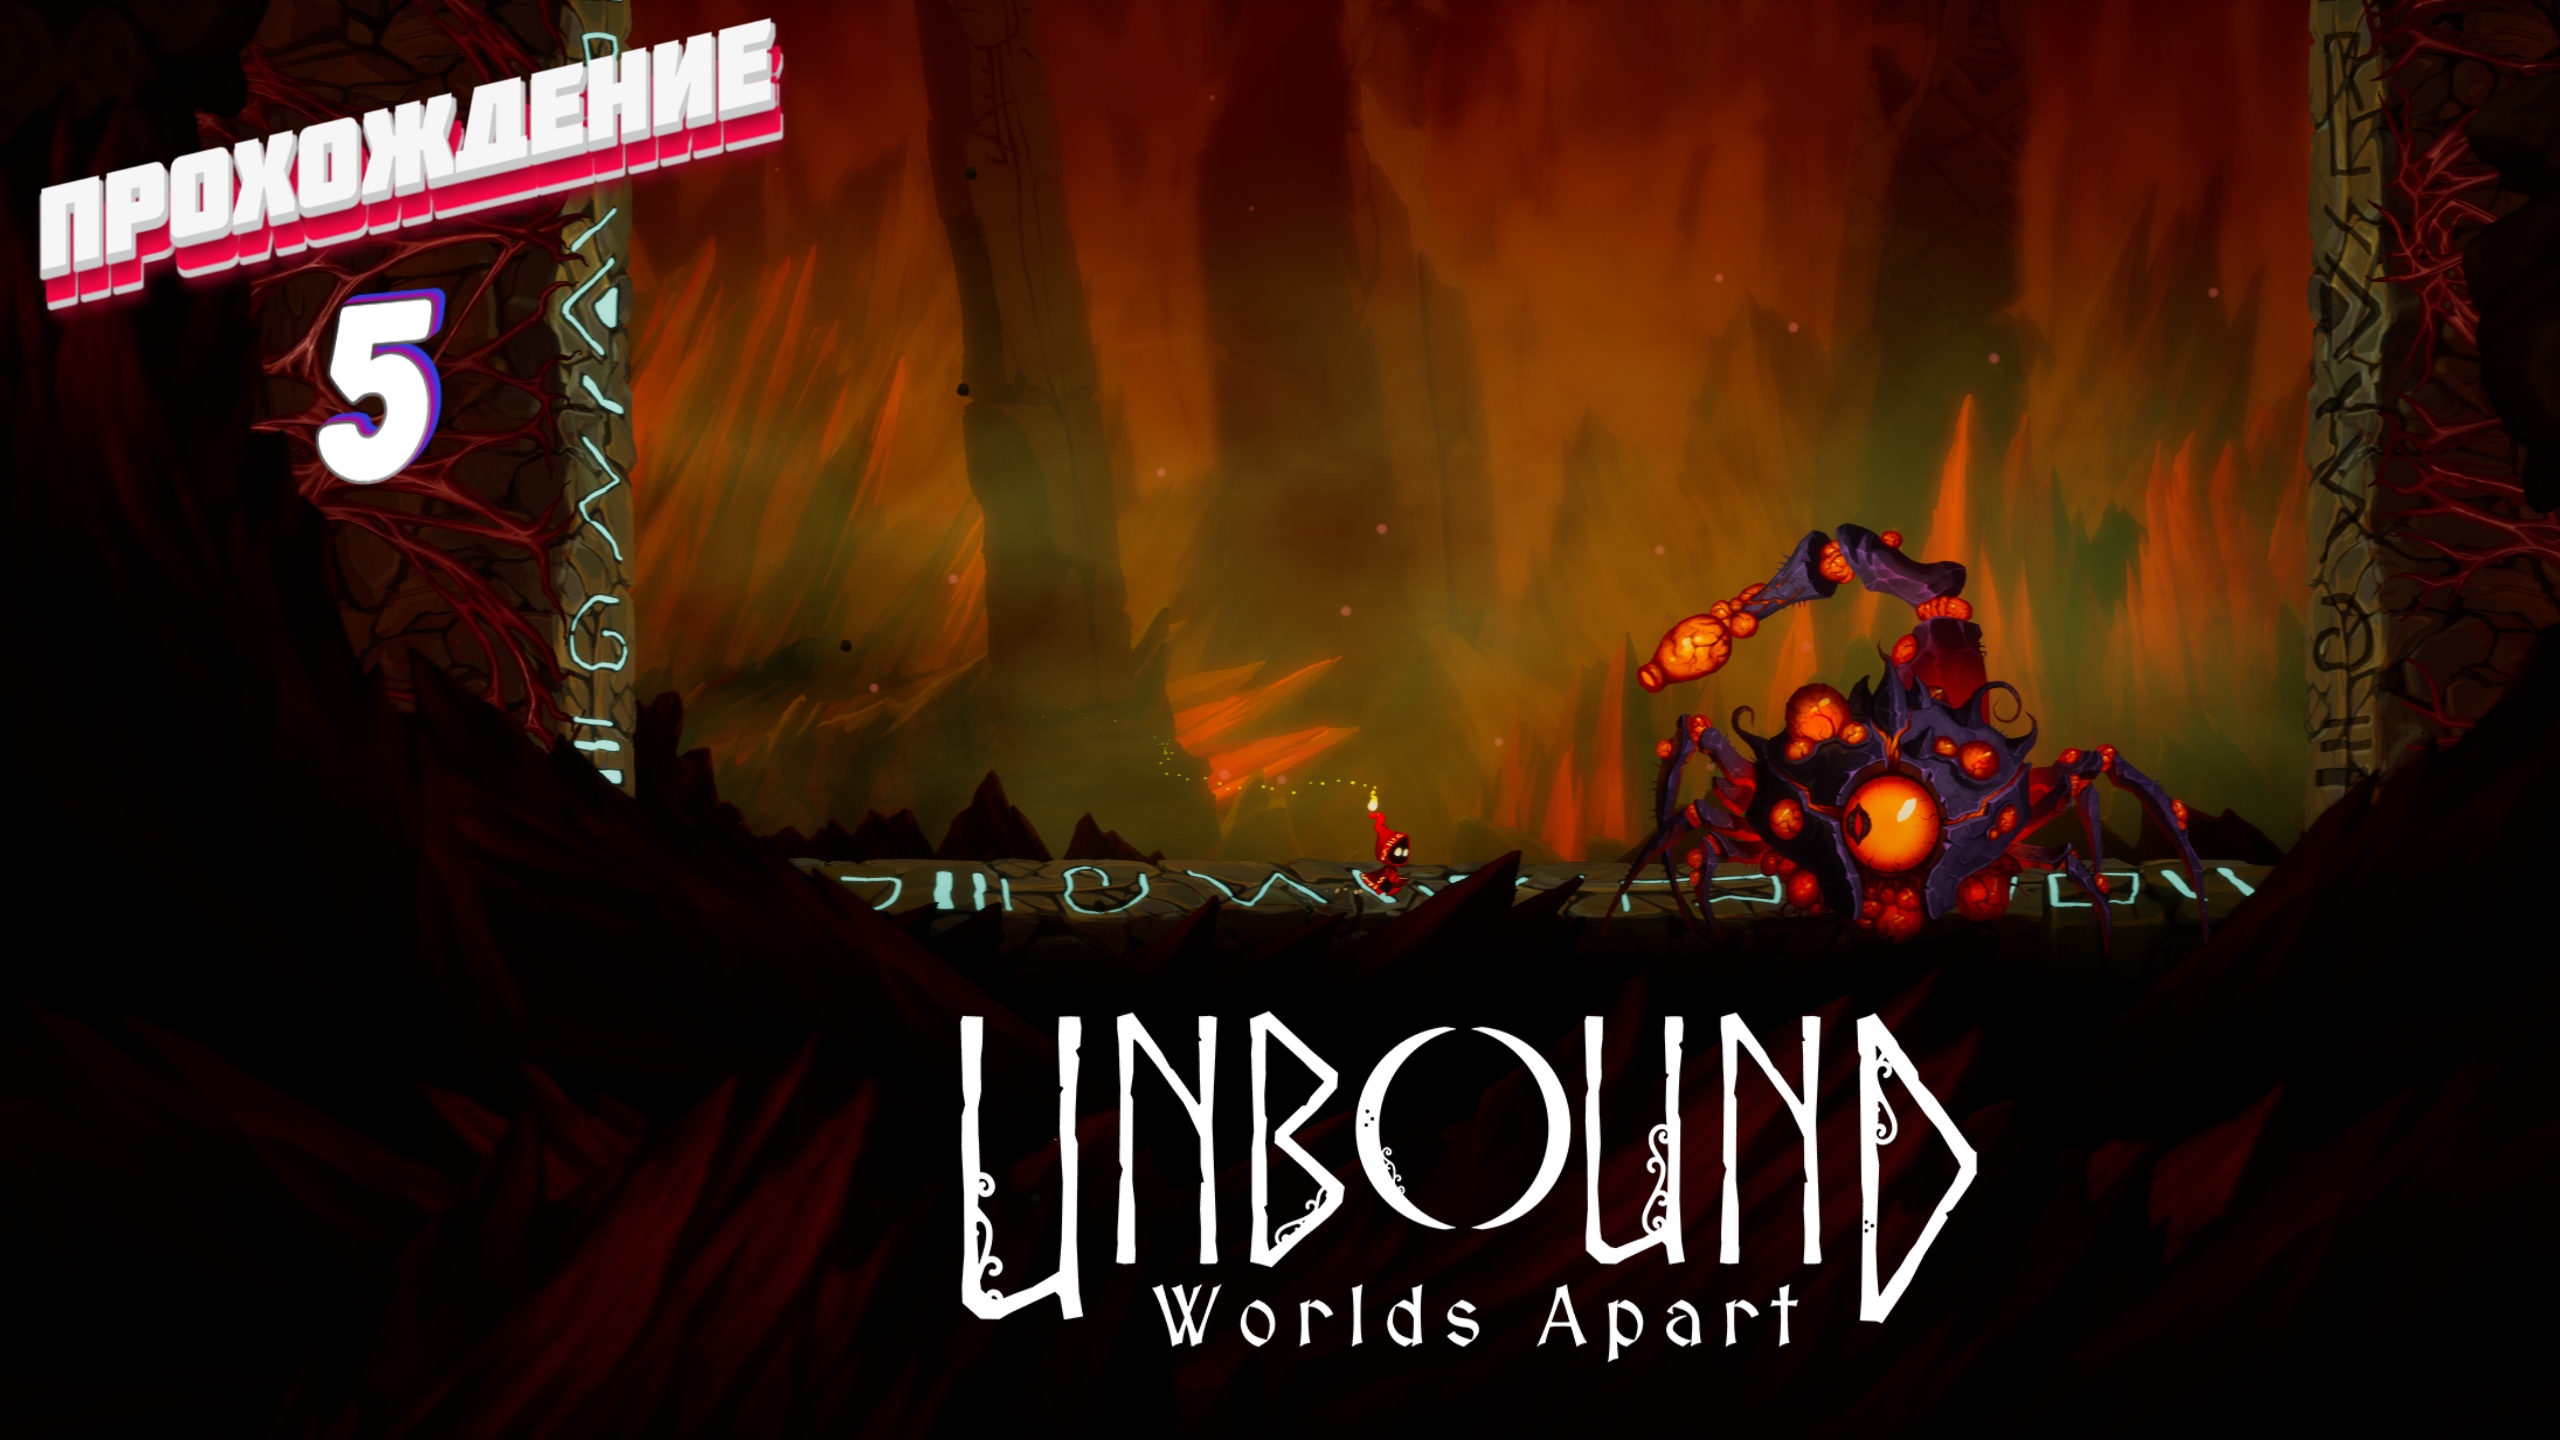 ДВА ДНЯ МУЧЕНИЙ ► Unbound: Worlds Apart прохождение | # 5